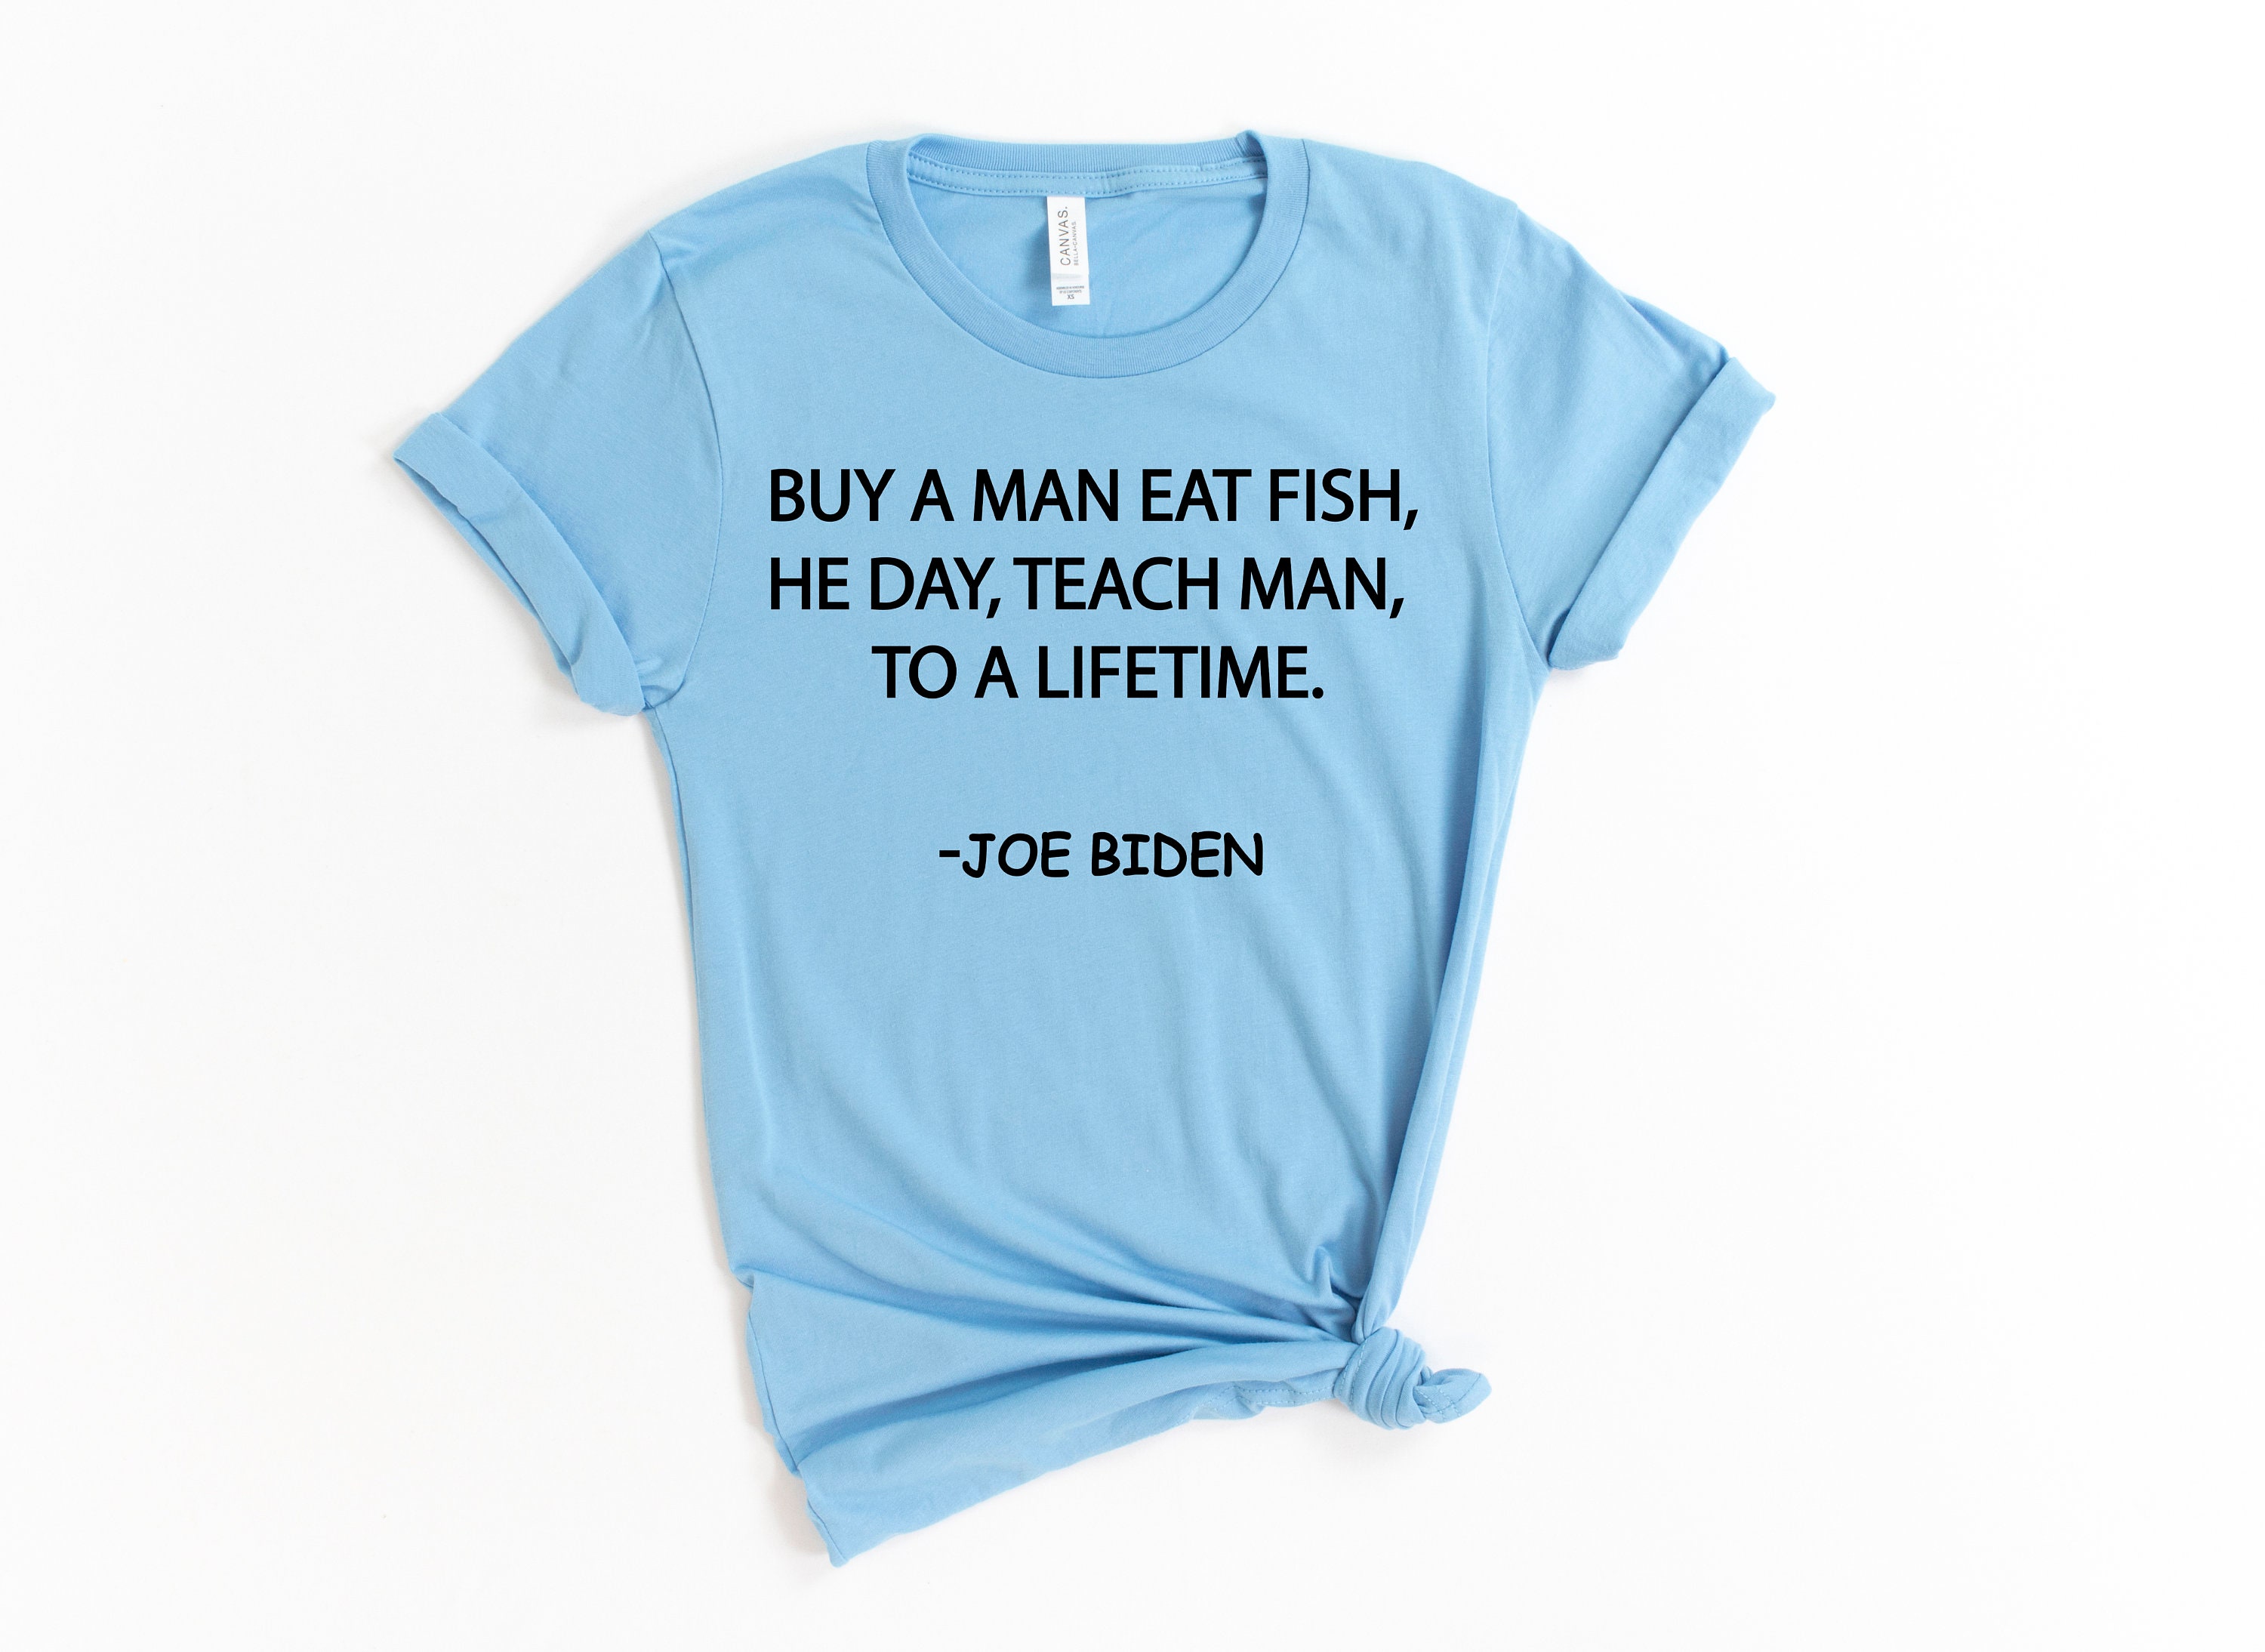 Buy A Man Eat Fish He Day Teach Man to A Lifetime, Joe Biden Shirt, Joe Biden Funny Shirt, Funny Joe Biden Shirt, Funny Shirt, Sleepy Biden